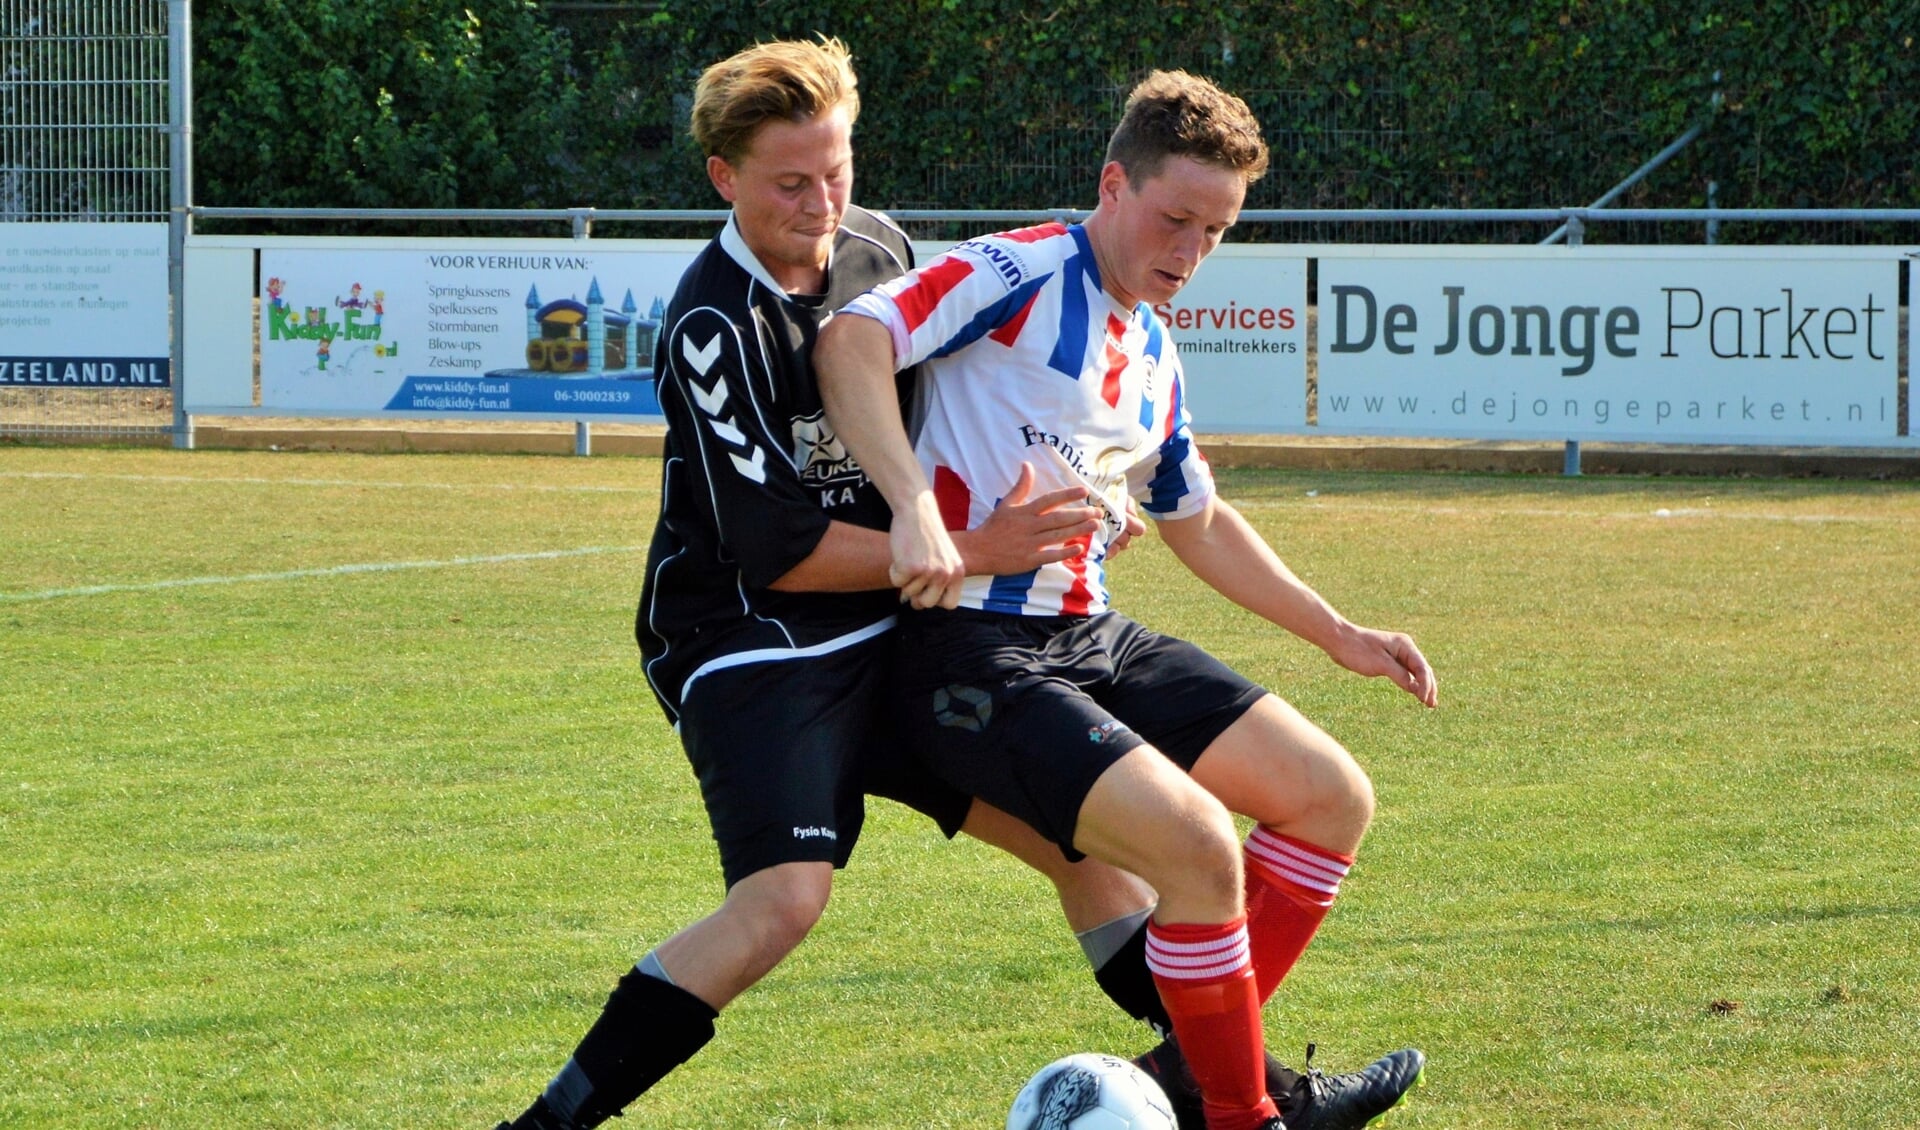 Bastiaan van Dijk (Krabbendijke) in duel met Ries de Jonge (Kapelle) in de gemeente-derby. 